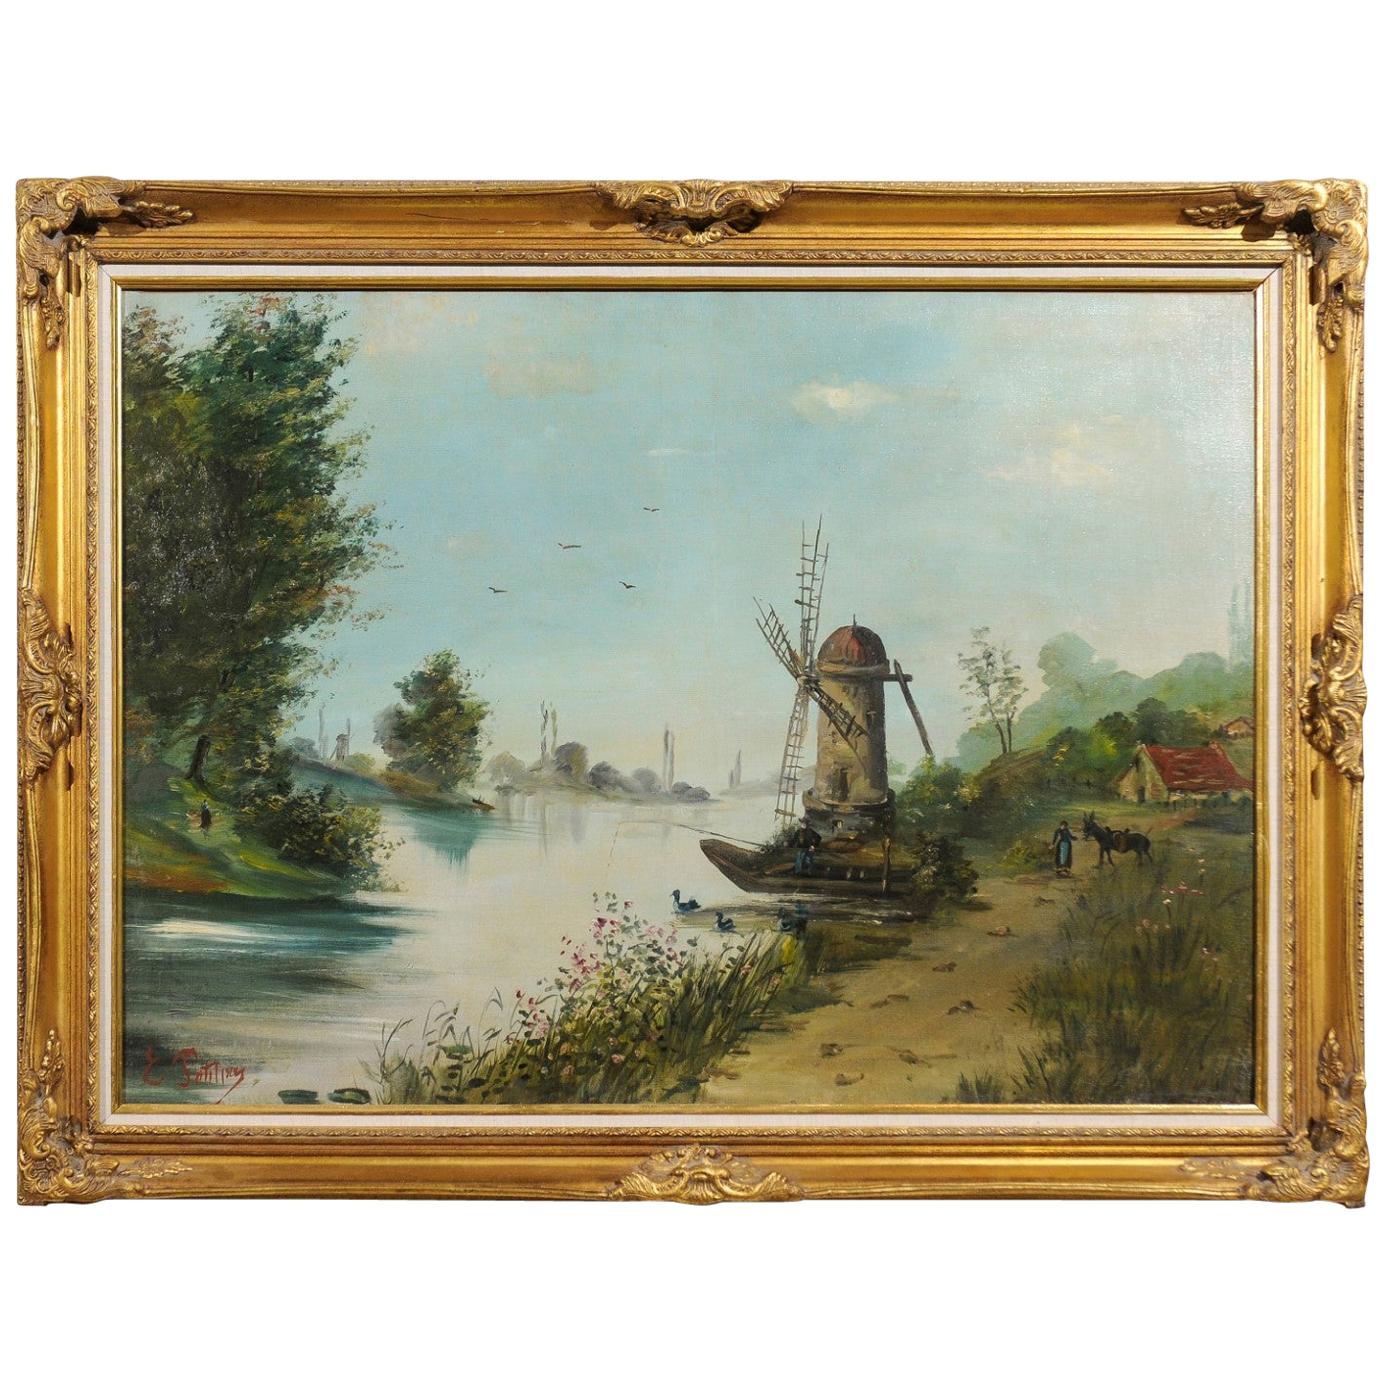 Huile sur toile de paysage signée Eugne Petitpas 1902, dans un cadre en bois doré